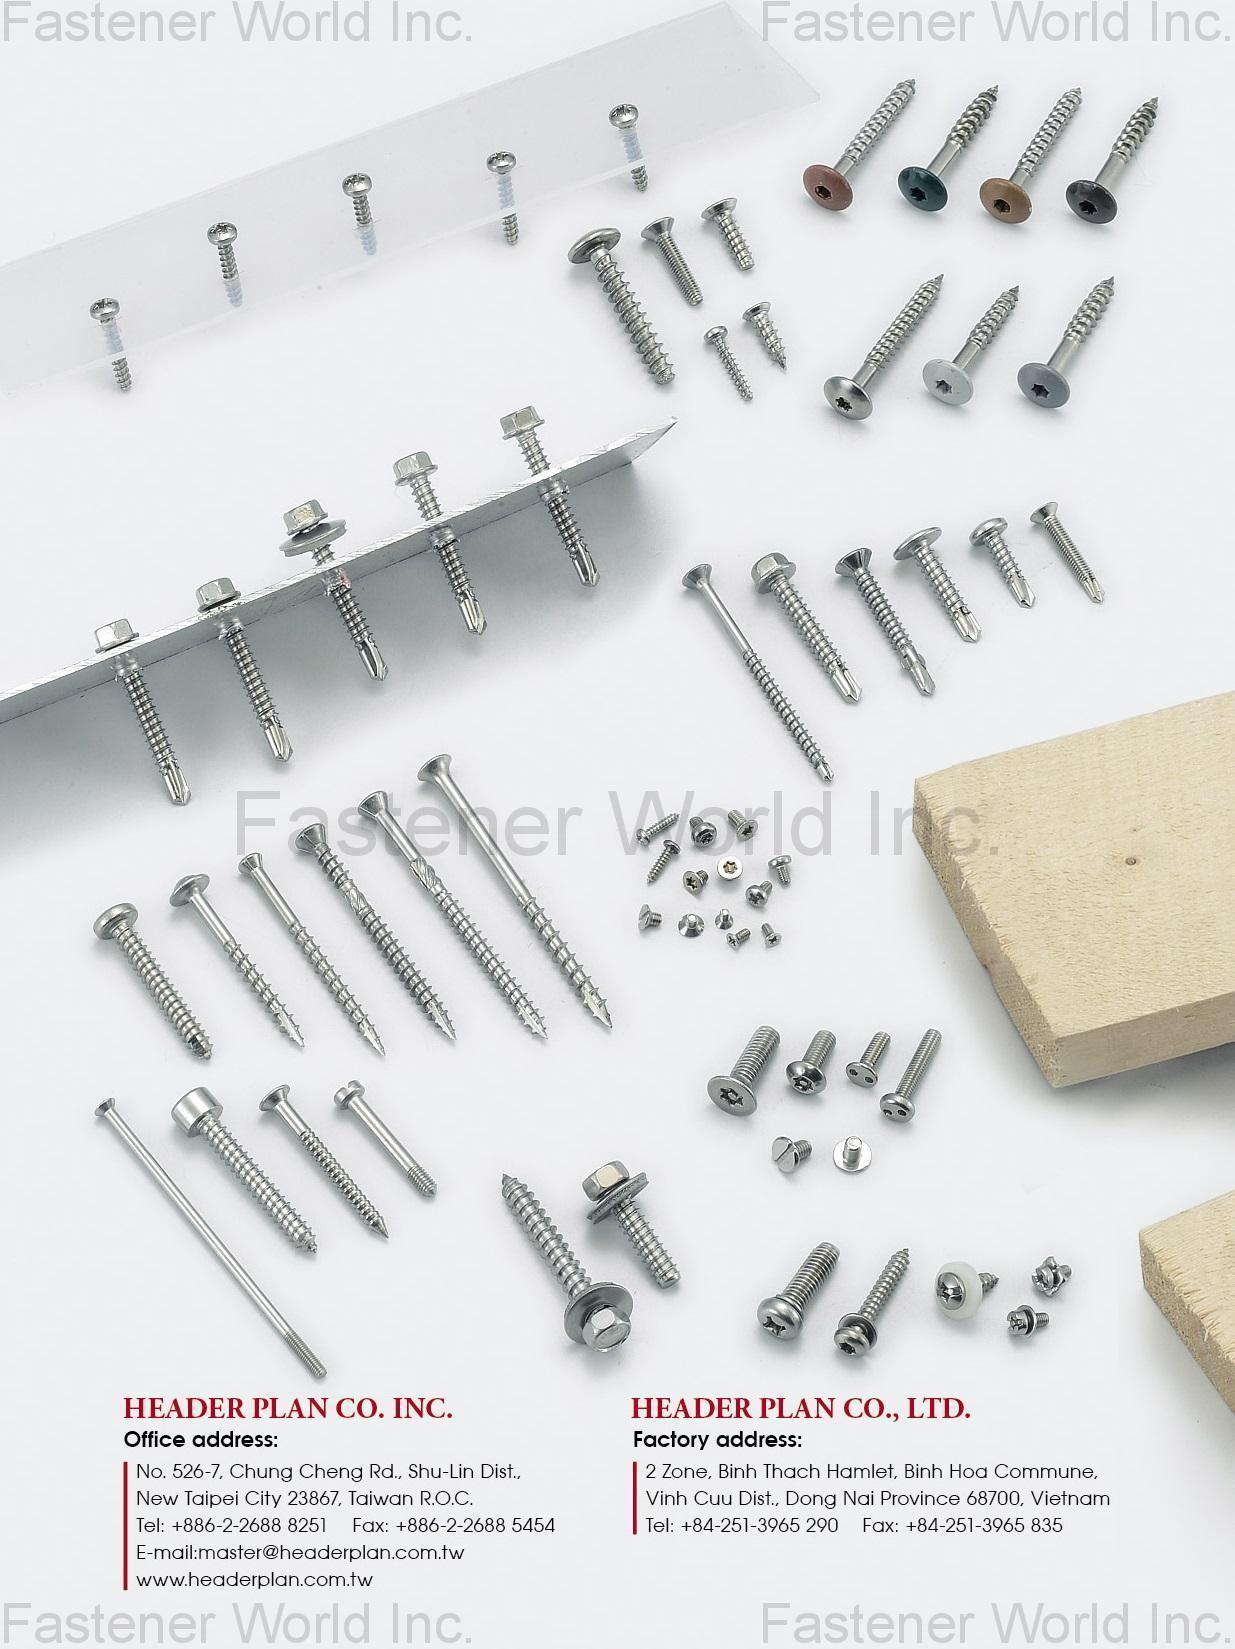 HEADER PLAN CO. INC.  , Stainless steel screws, Self drilling screws, Plastics screws, PT screws, Triangle thread screws, SECURITY SCREWS, special screws , TEK Screws